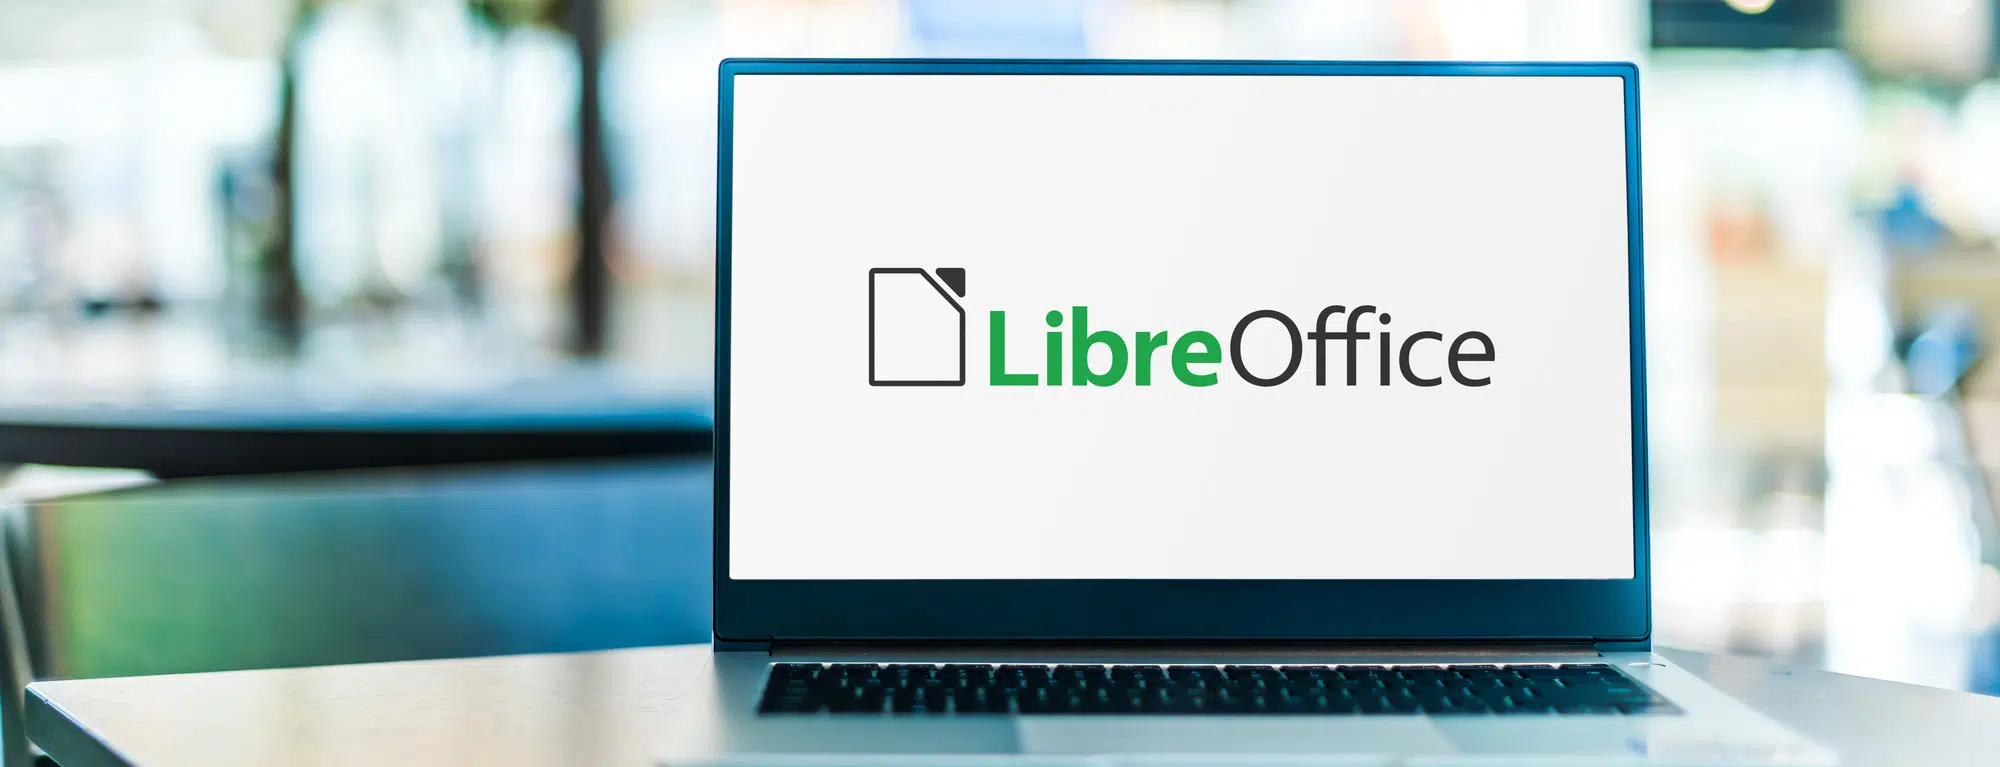 Tutto quello che c'è da sapere LibreOffice 7.3 Community thumbnail